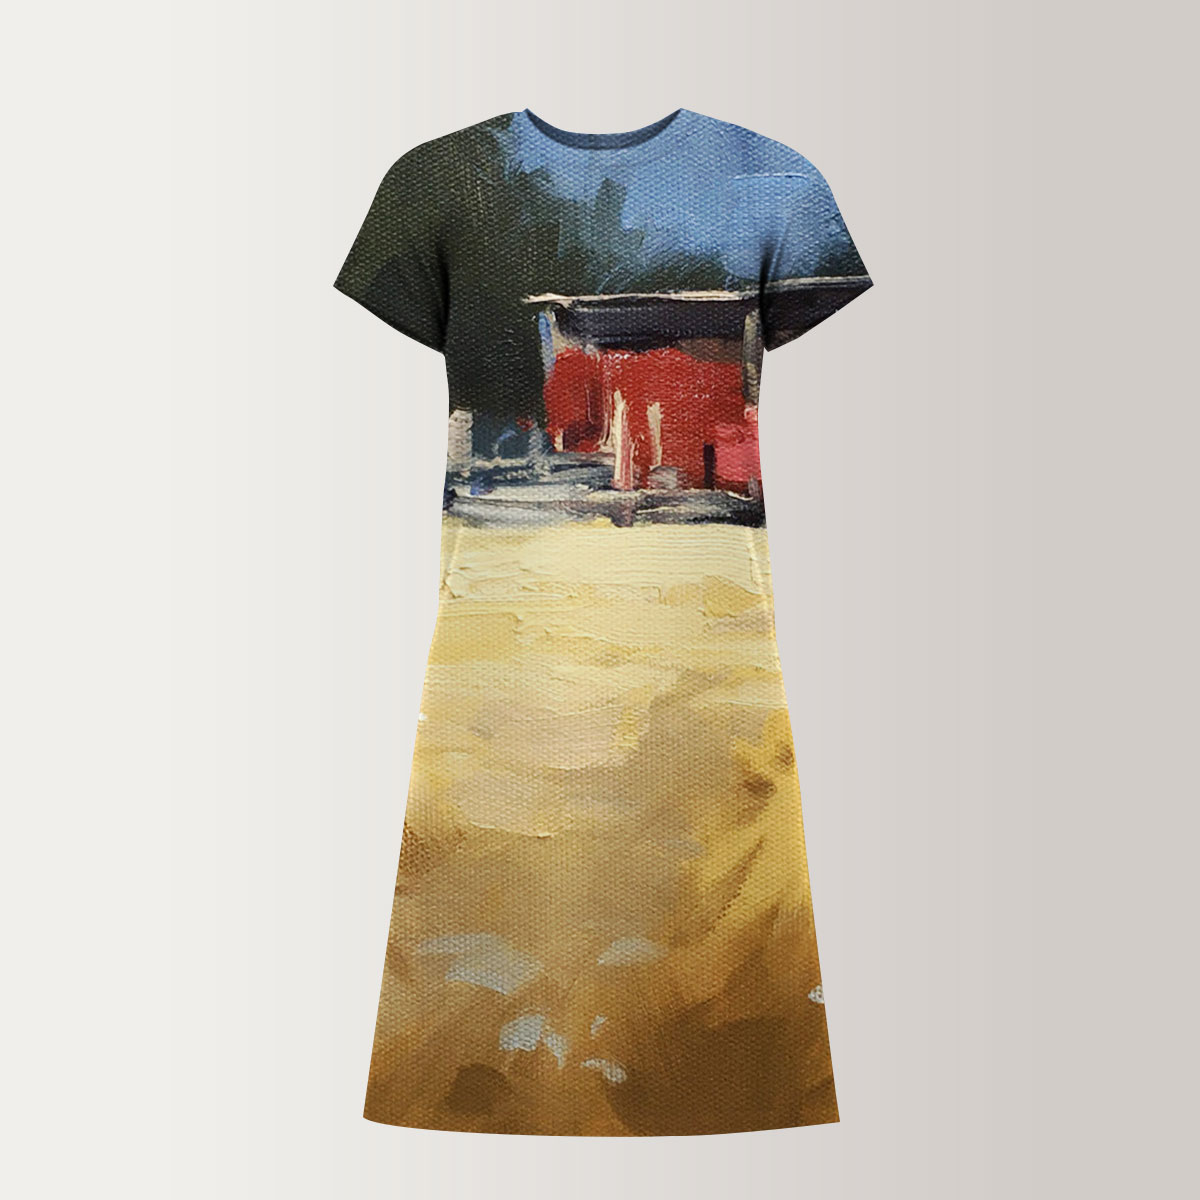 Rustic Farm T-Shirt Dress